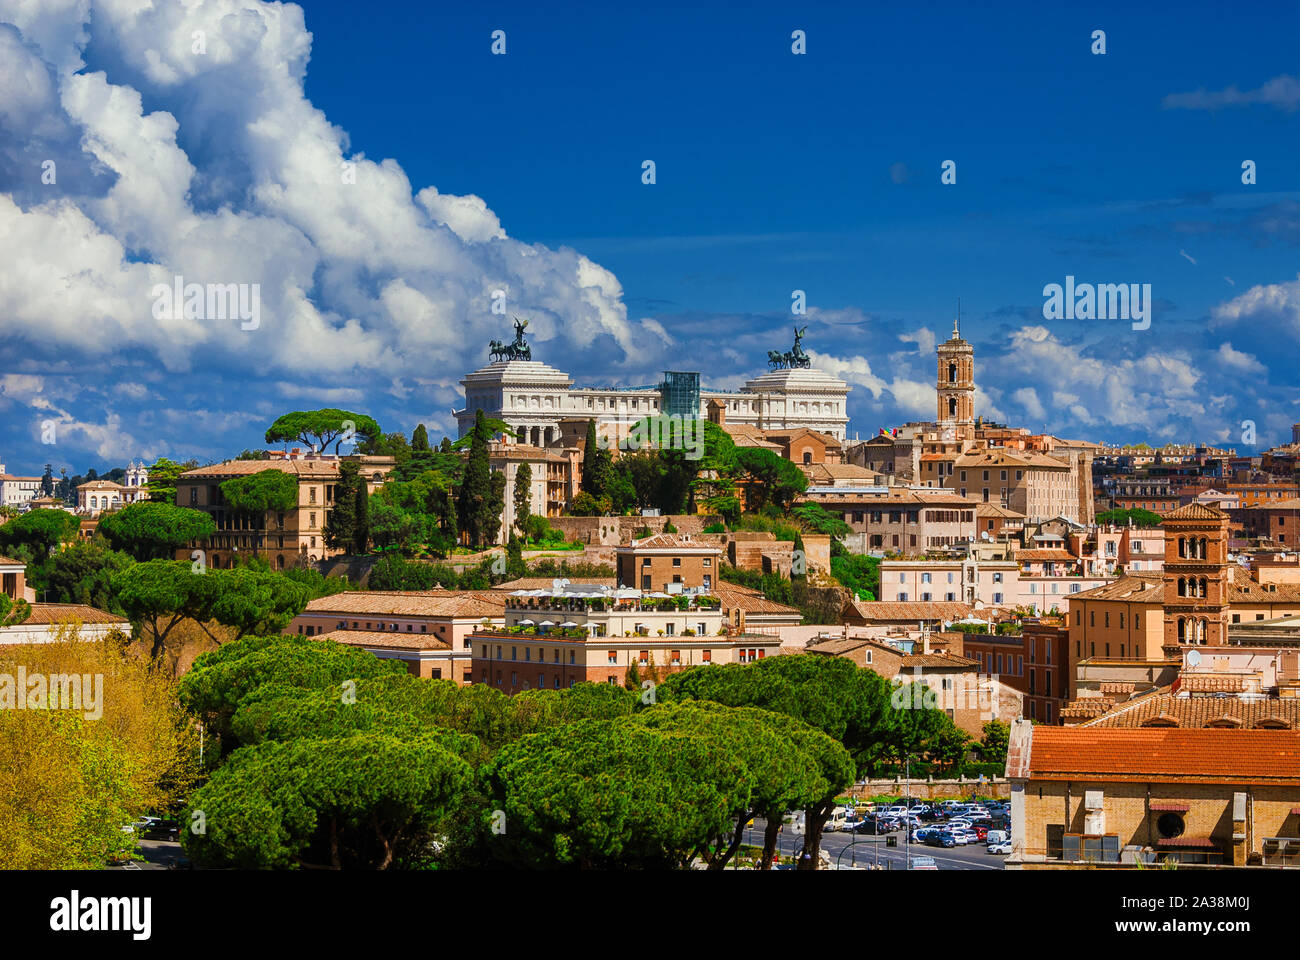 Blick auf das Kapitol mit seinen anciet Sehenswürdigkeiten im historischen Zentrum von Rom Stockfoto